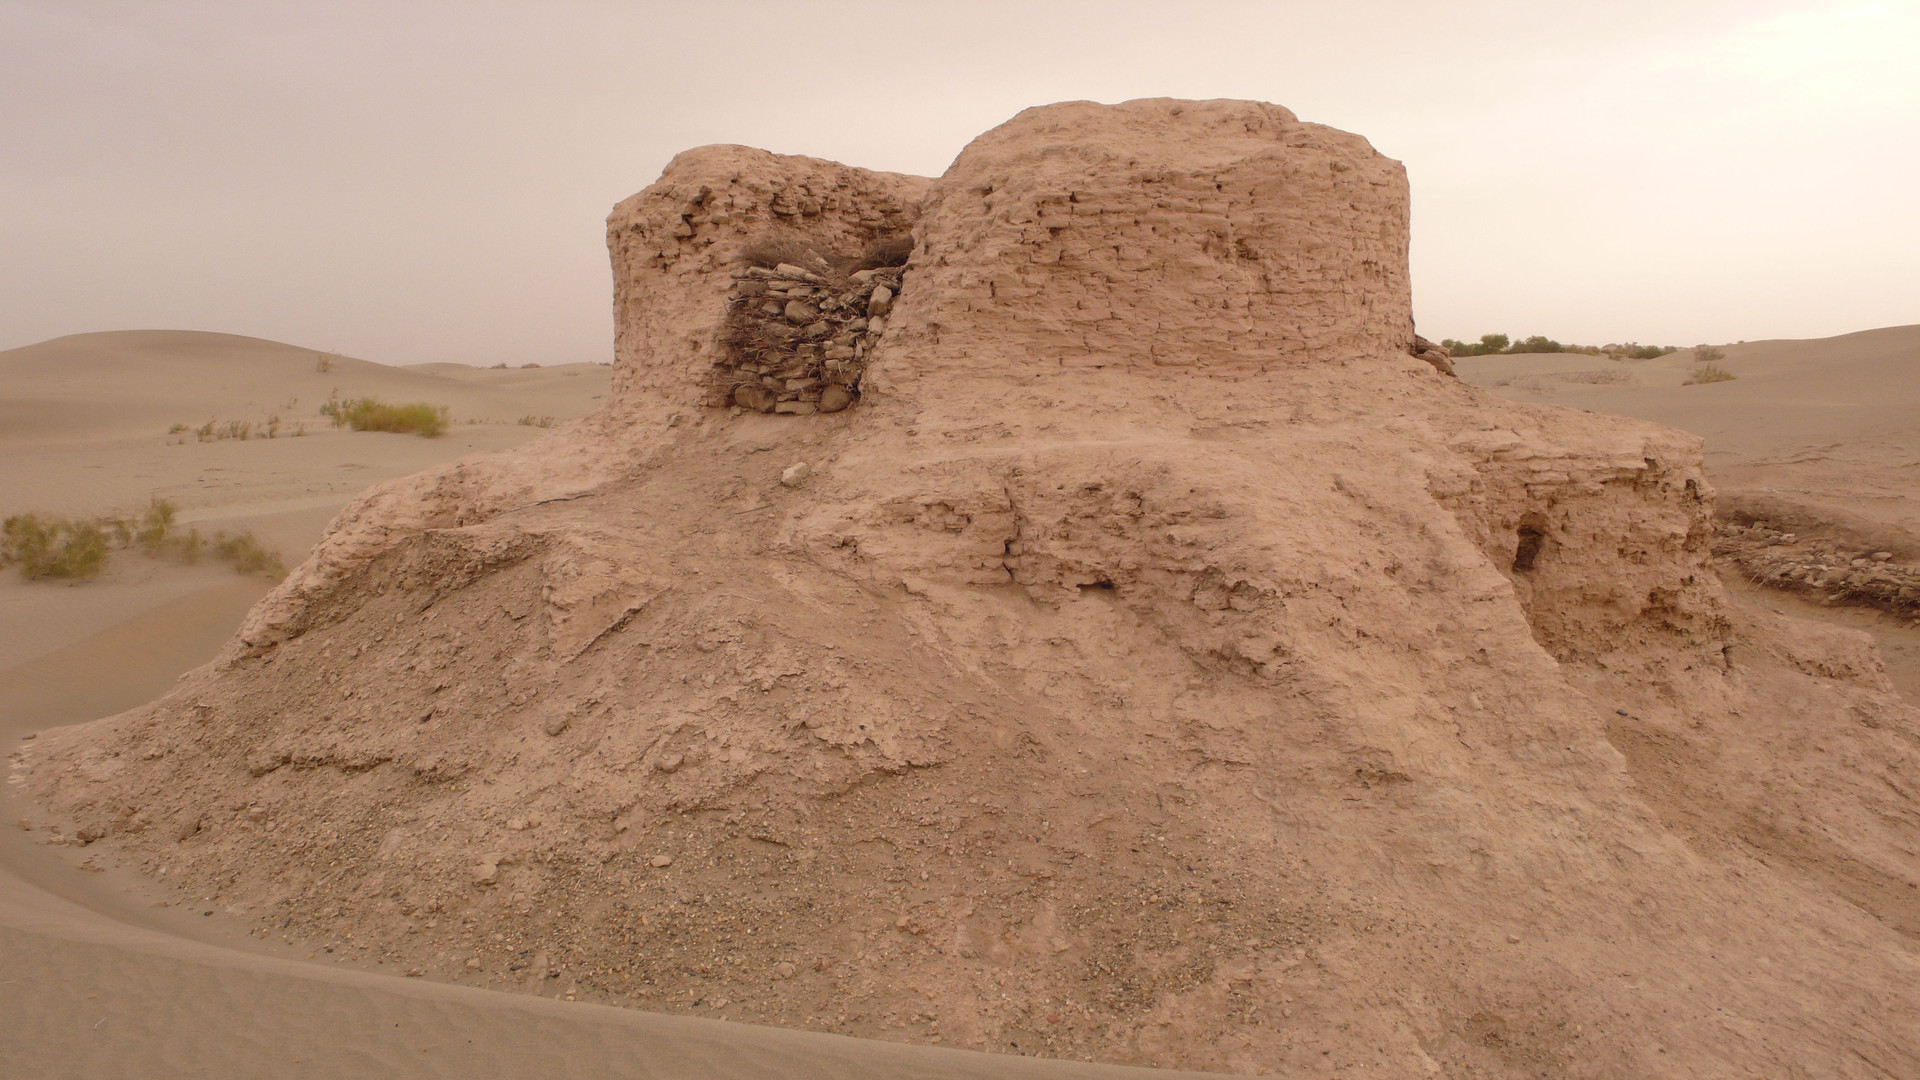 Tàn tích của Bảo tháp Rawak bên ngoài Khotan, một địa điểm Phật giáo có niên đại từ cuối thế kỷ 3 đến thế kỷ 5 sau Công nguyên. Ảnh: Wiki.